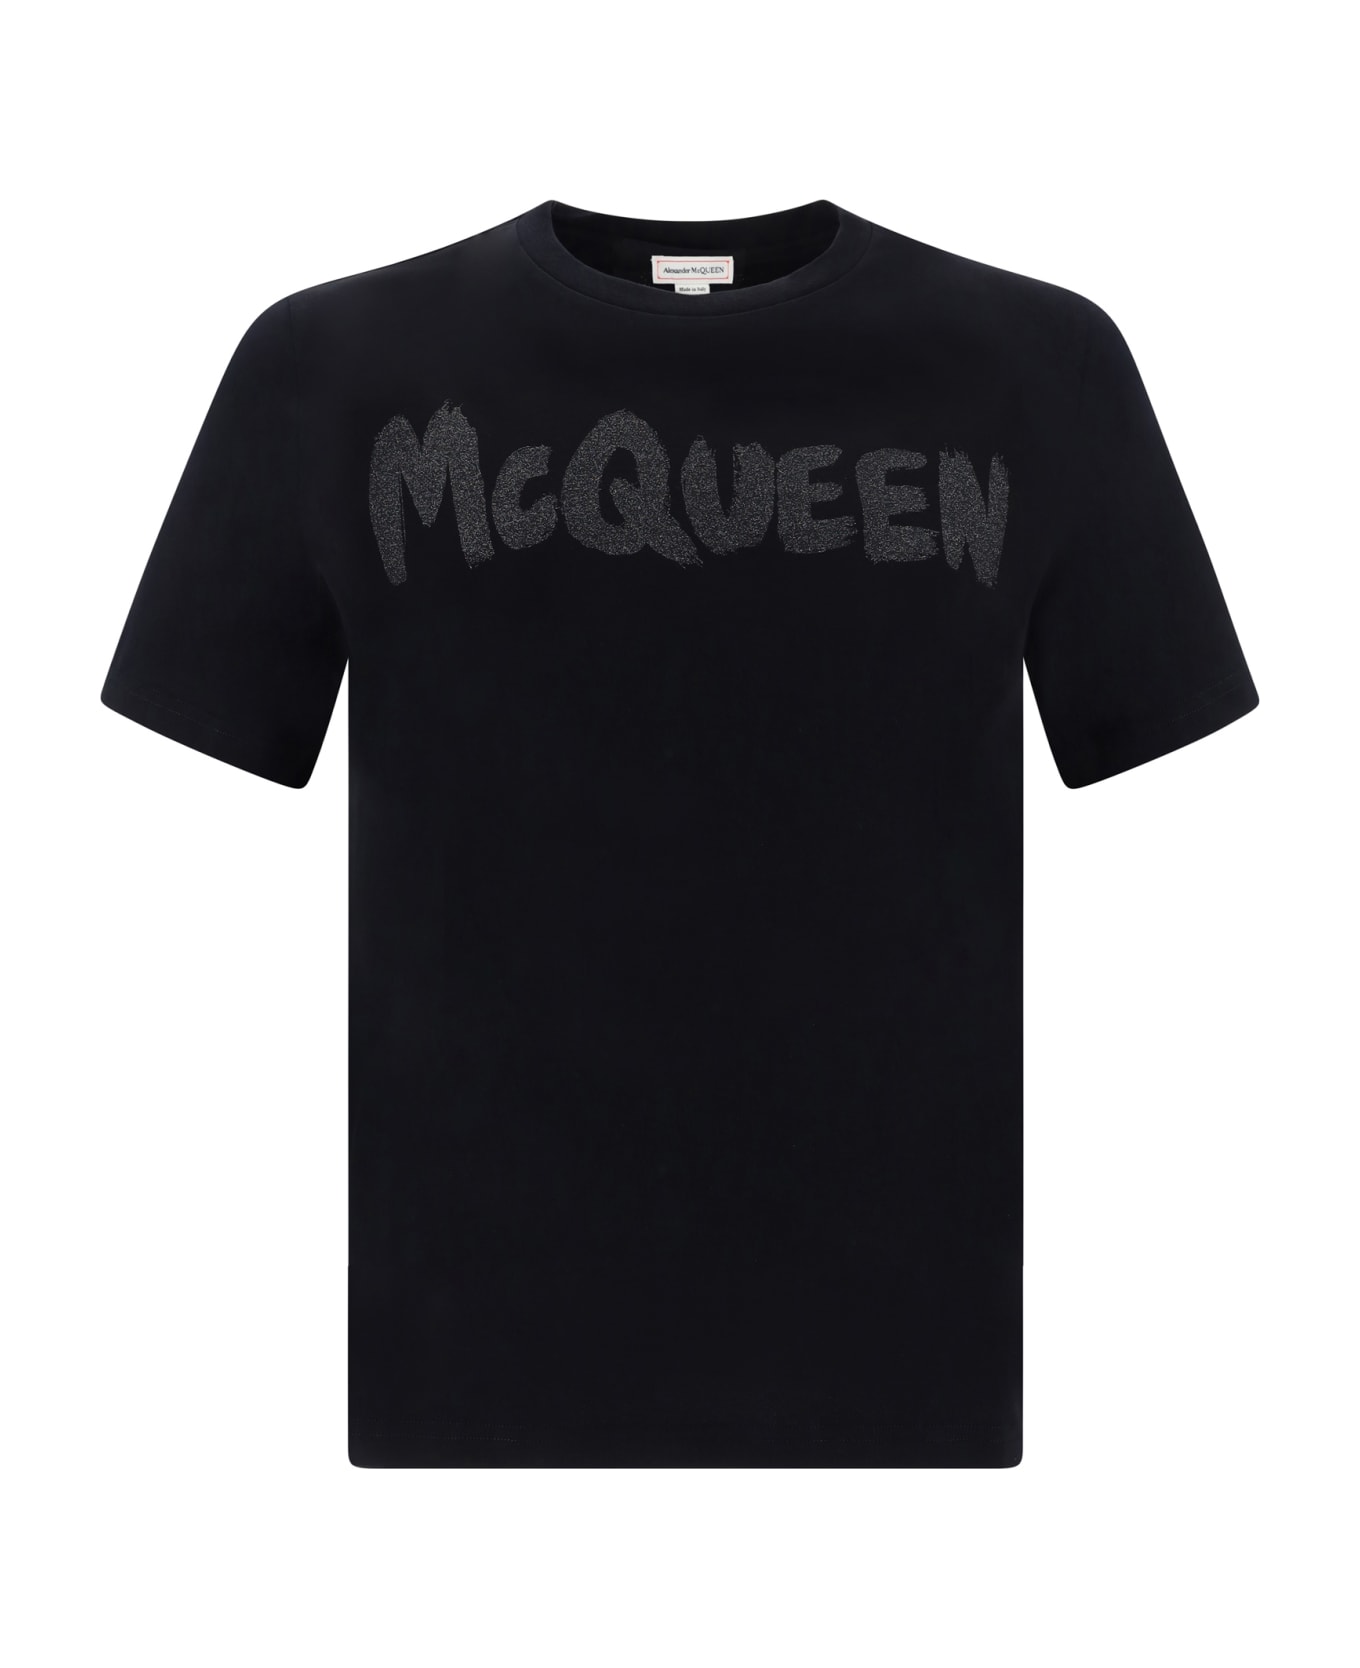 Alexander McQueen T-shirt - Black/steel